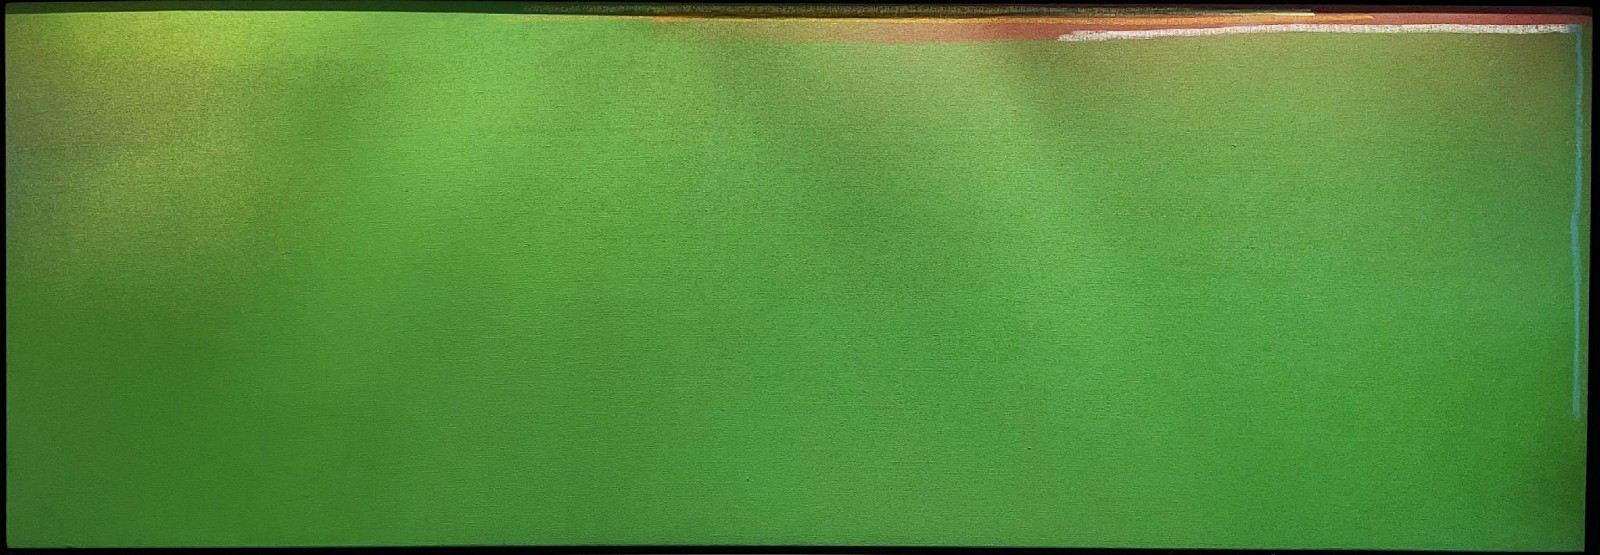 Jules Olitski, Green Flip Out, 1965
Acrylic on canvas, 31 x 91 in.
ILIJ00008